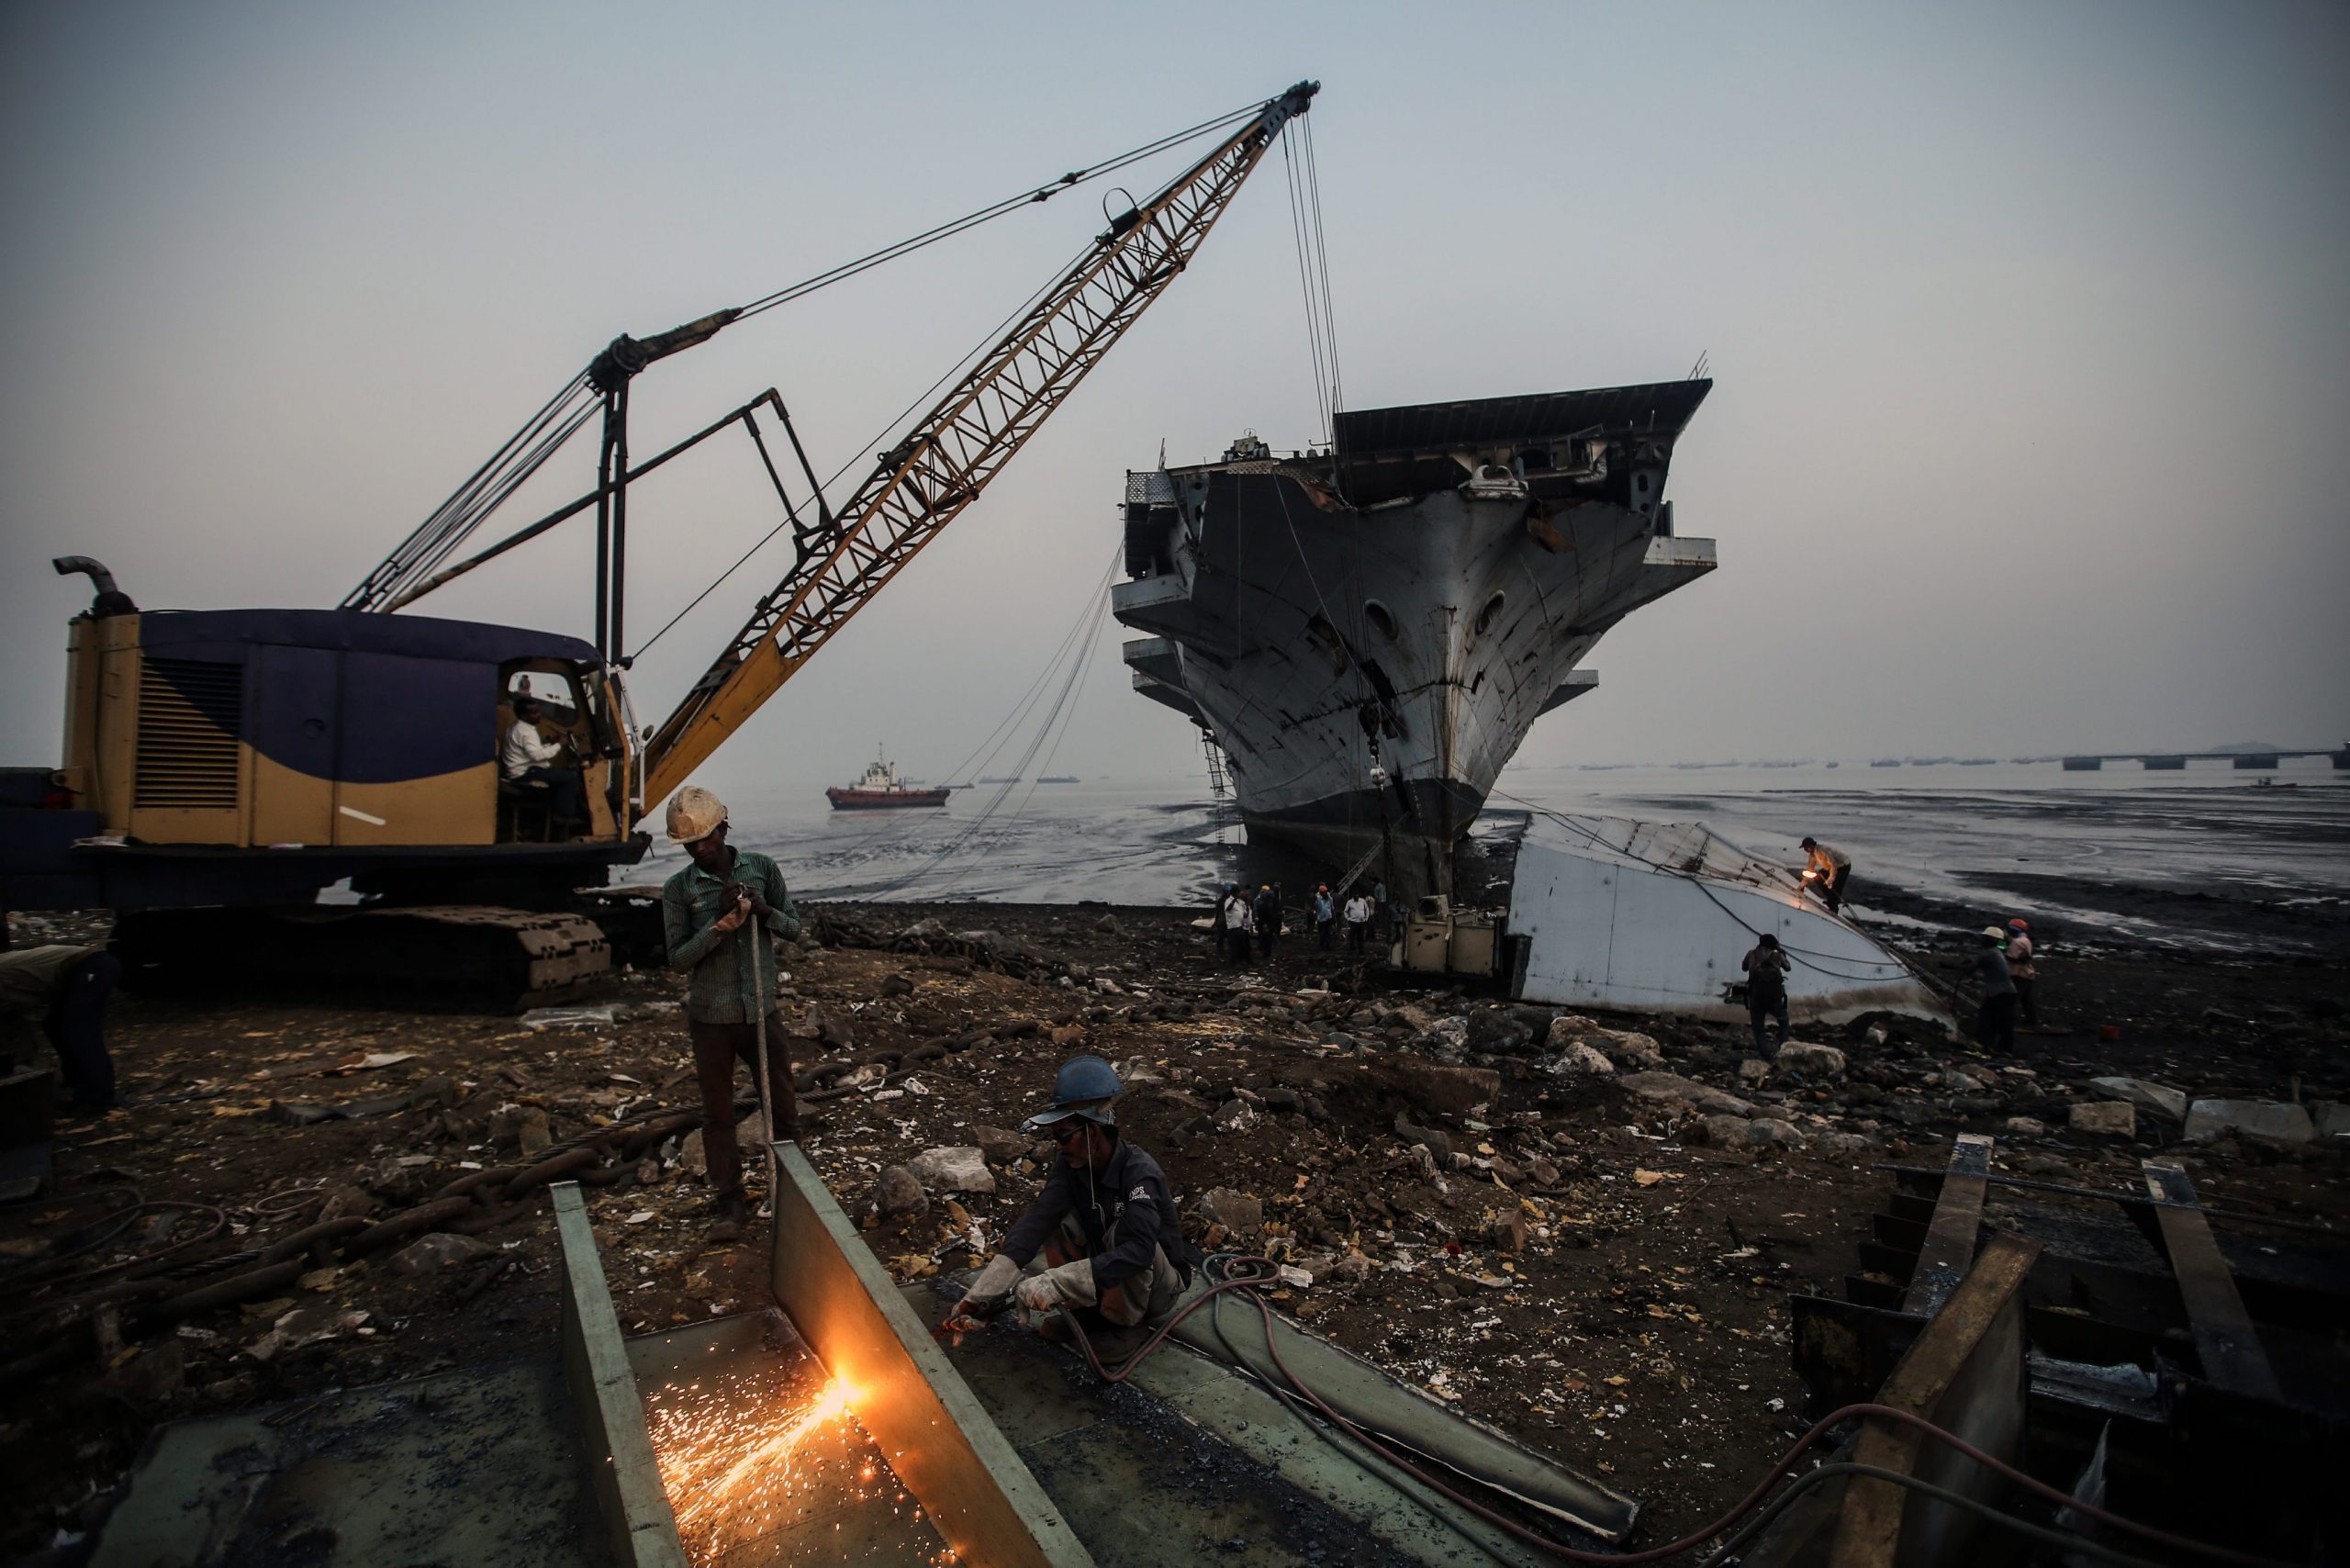 Ηλίας Τσακίρης – Αναγκαία η διαφάνεια στην ανακύκλωση πλοίων